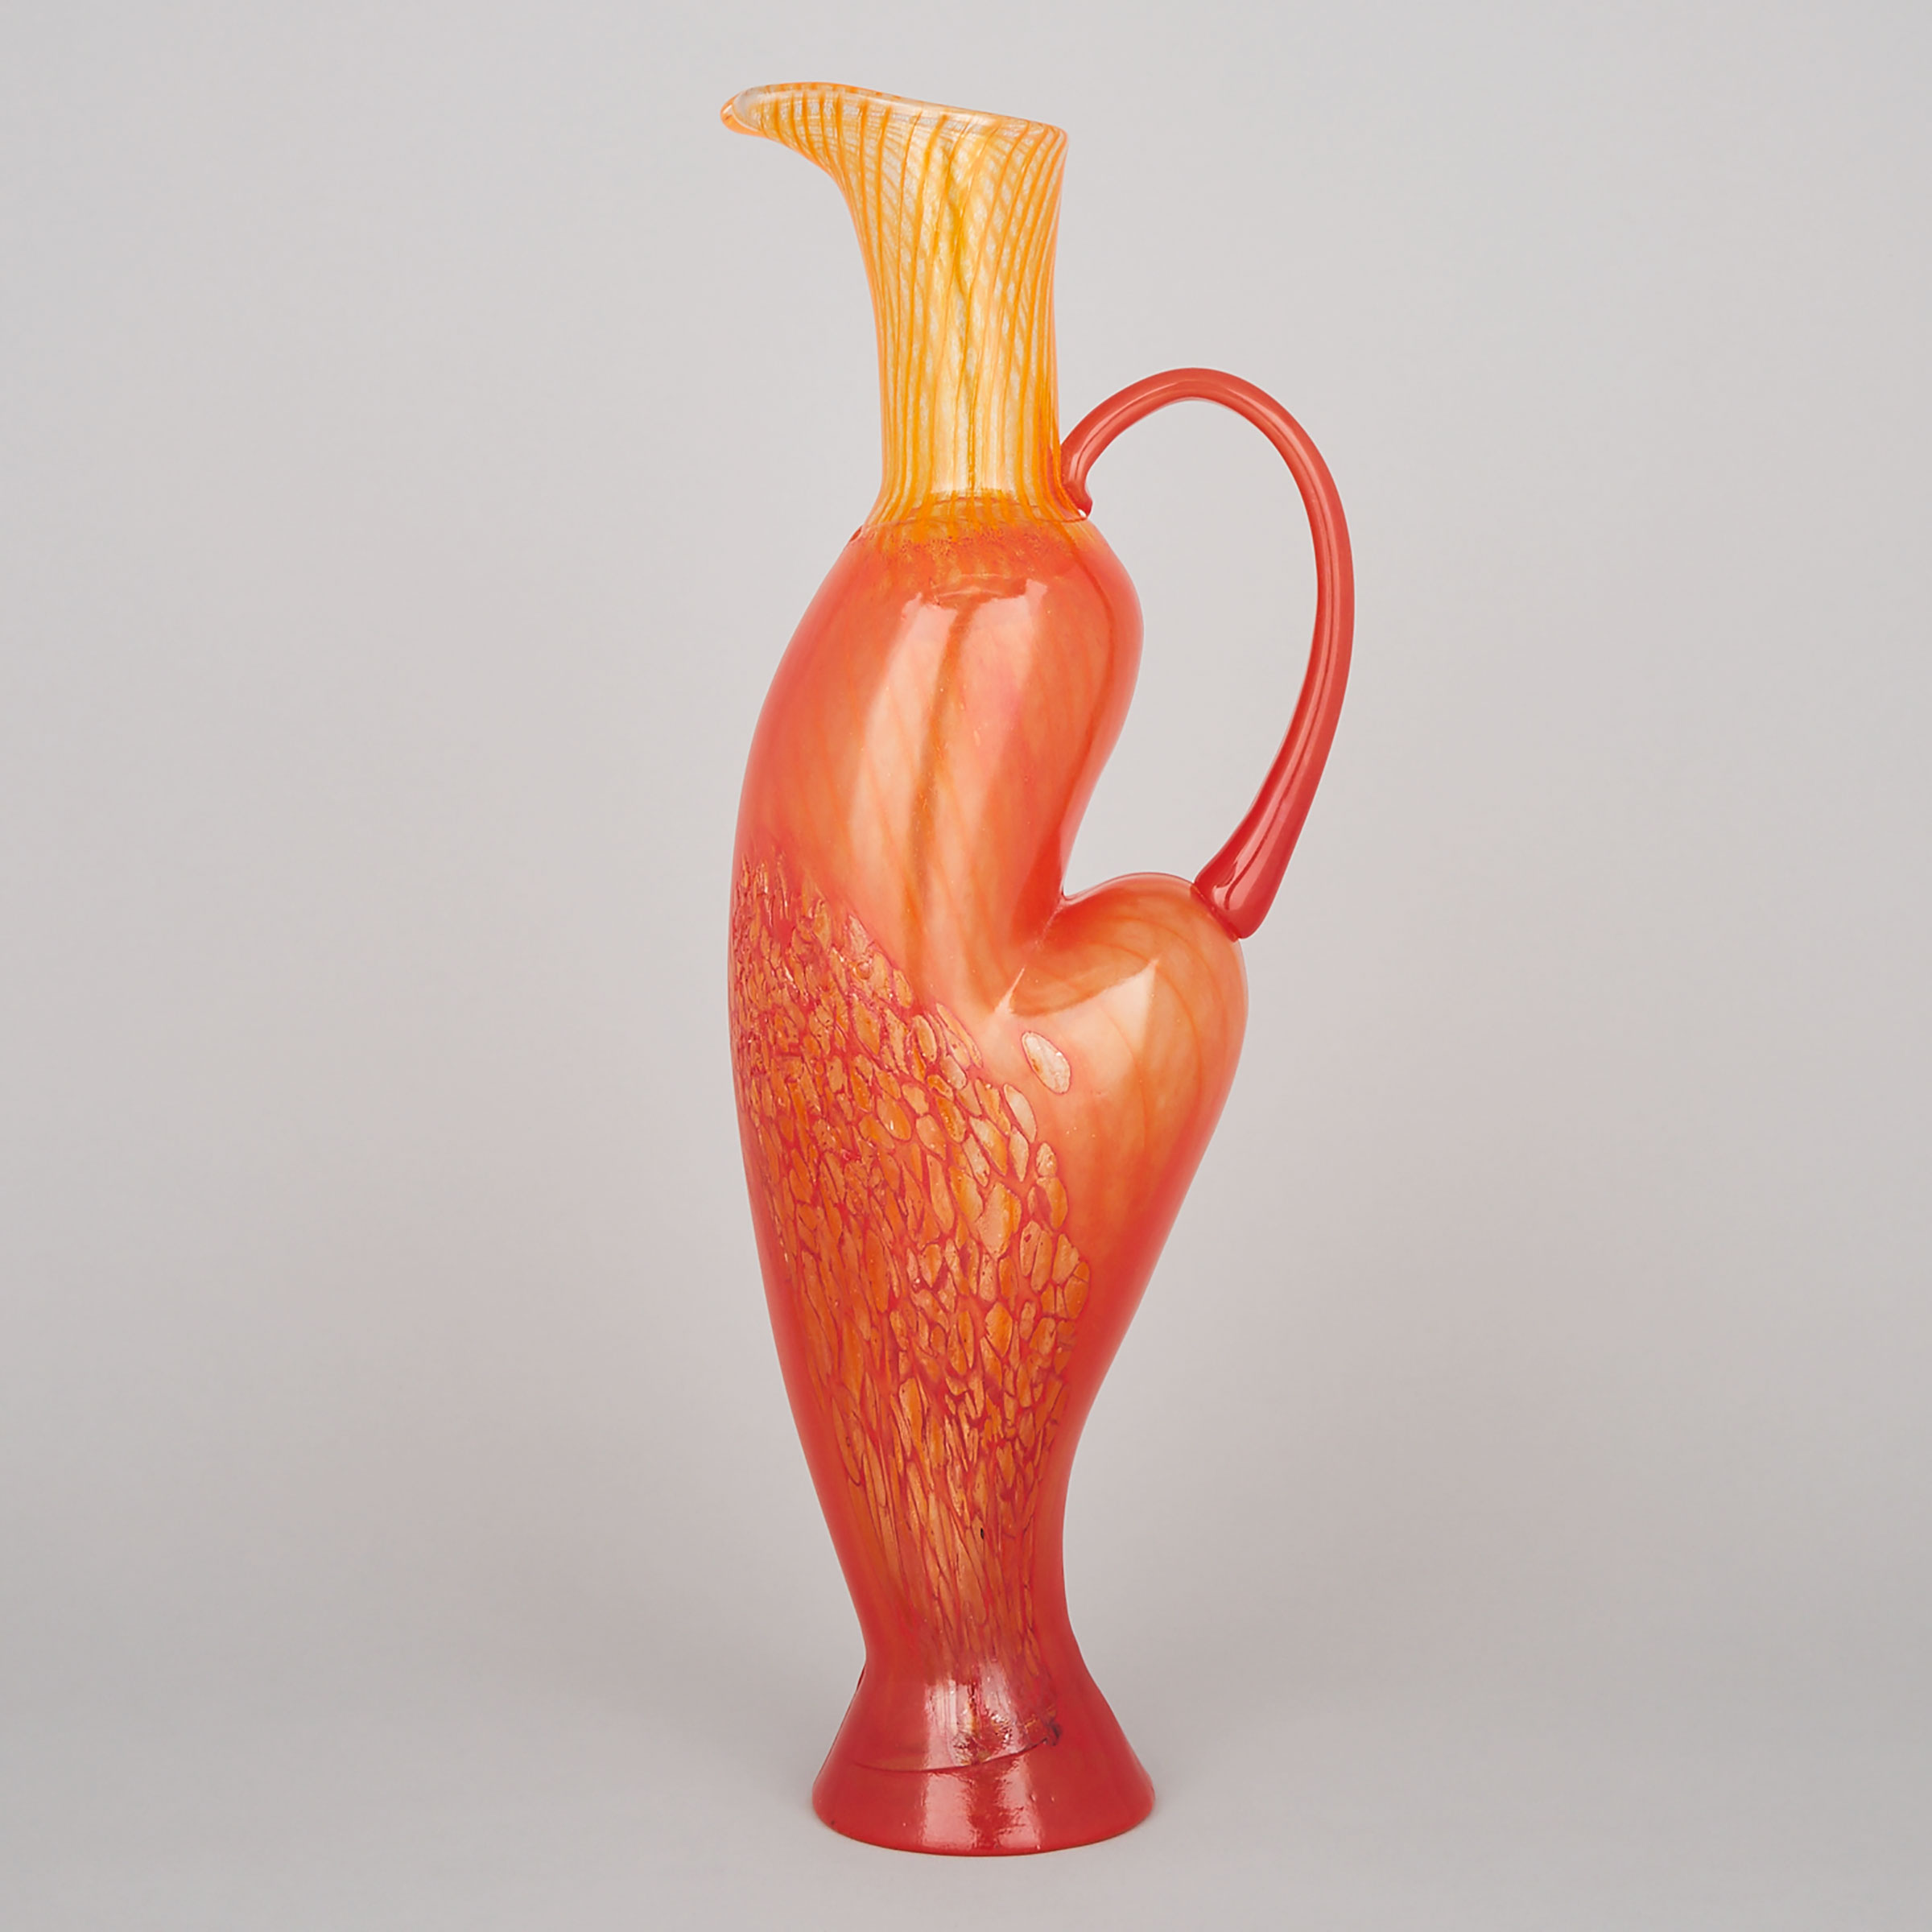 Kosta Boda Striped and Mottled Orange Glass Ewer, Kjell Engman, c.2000